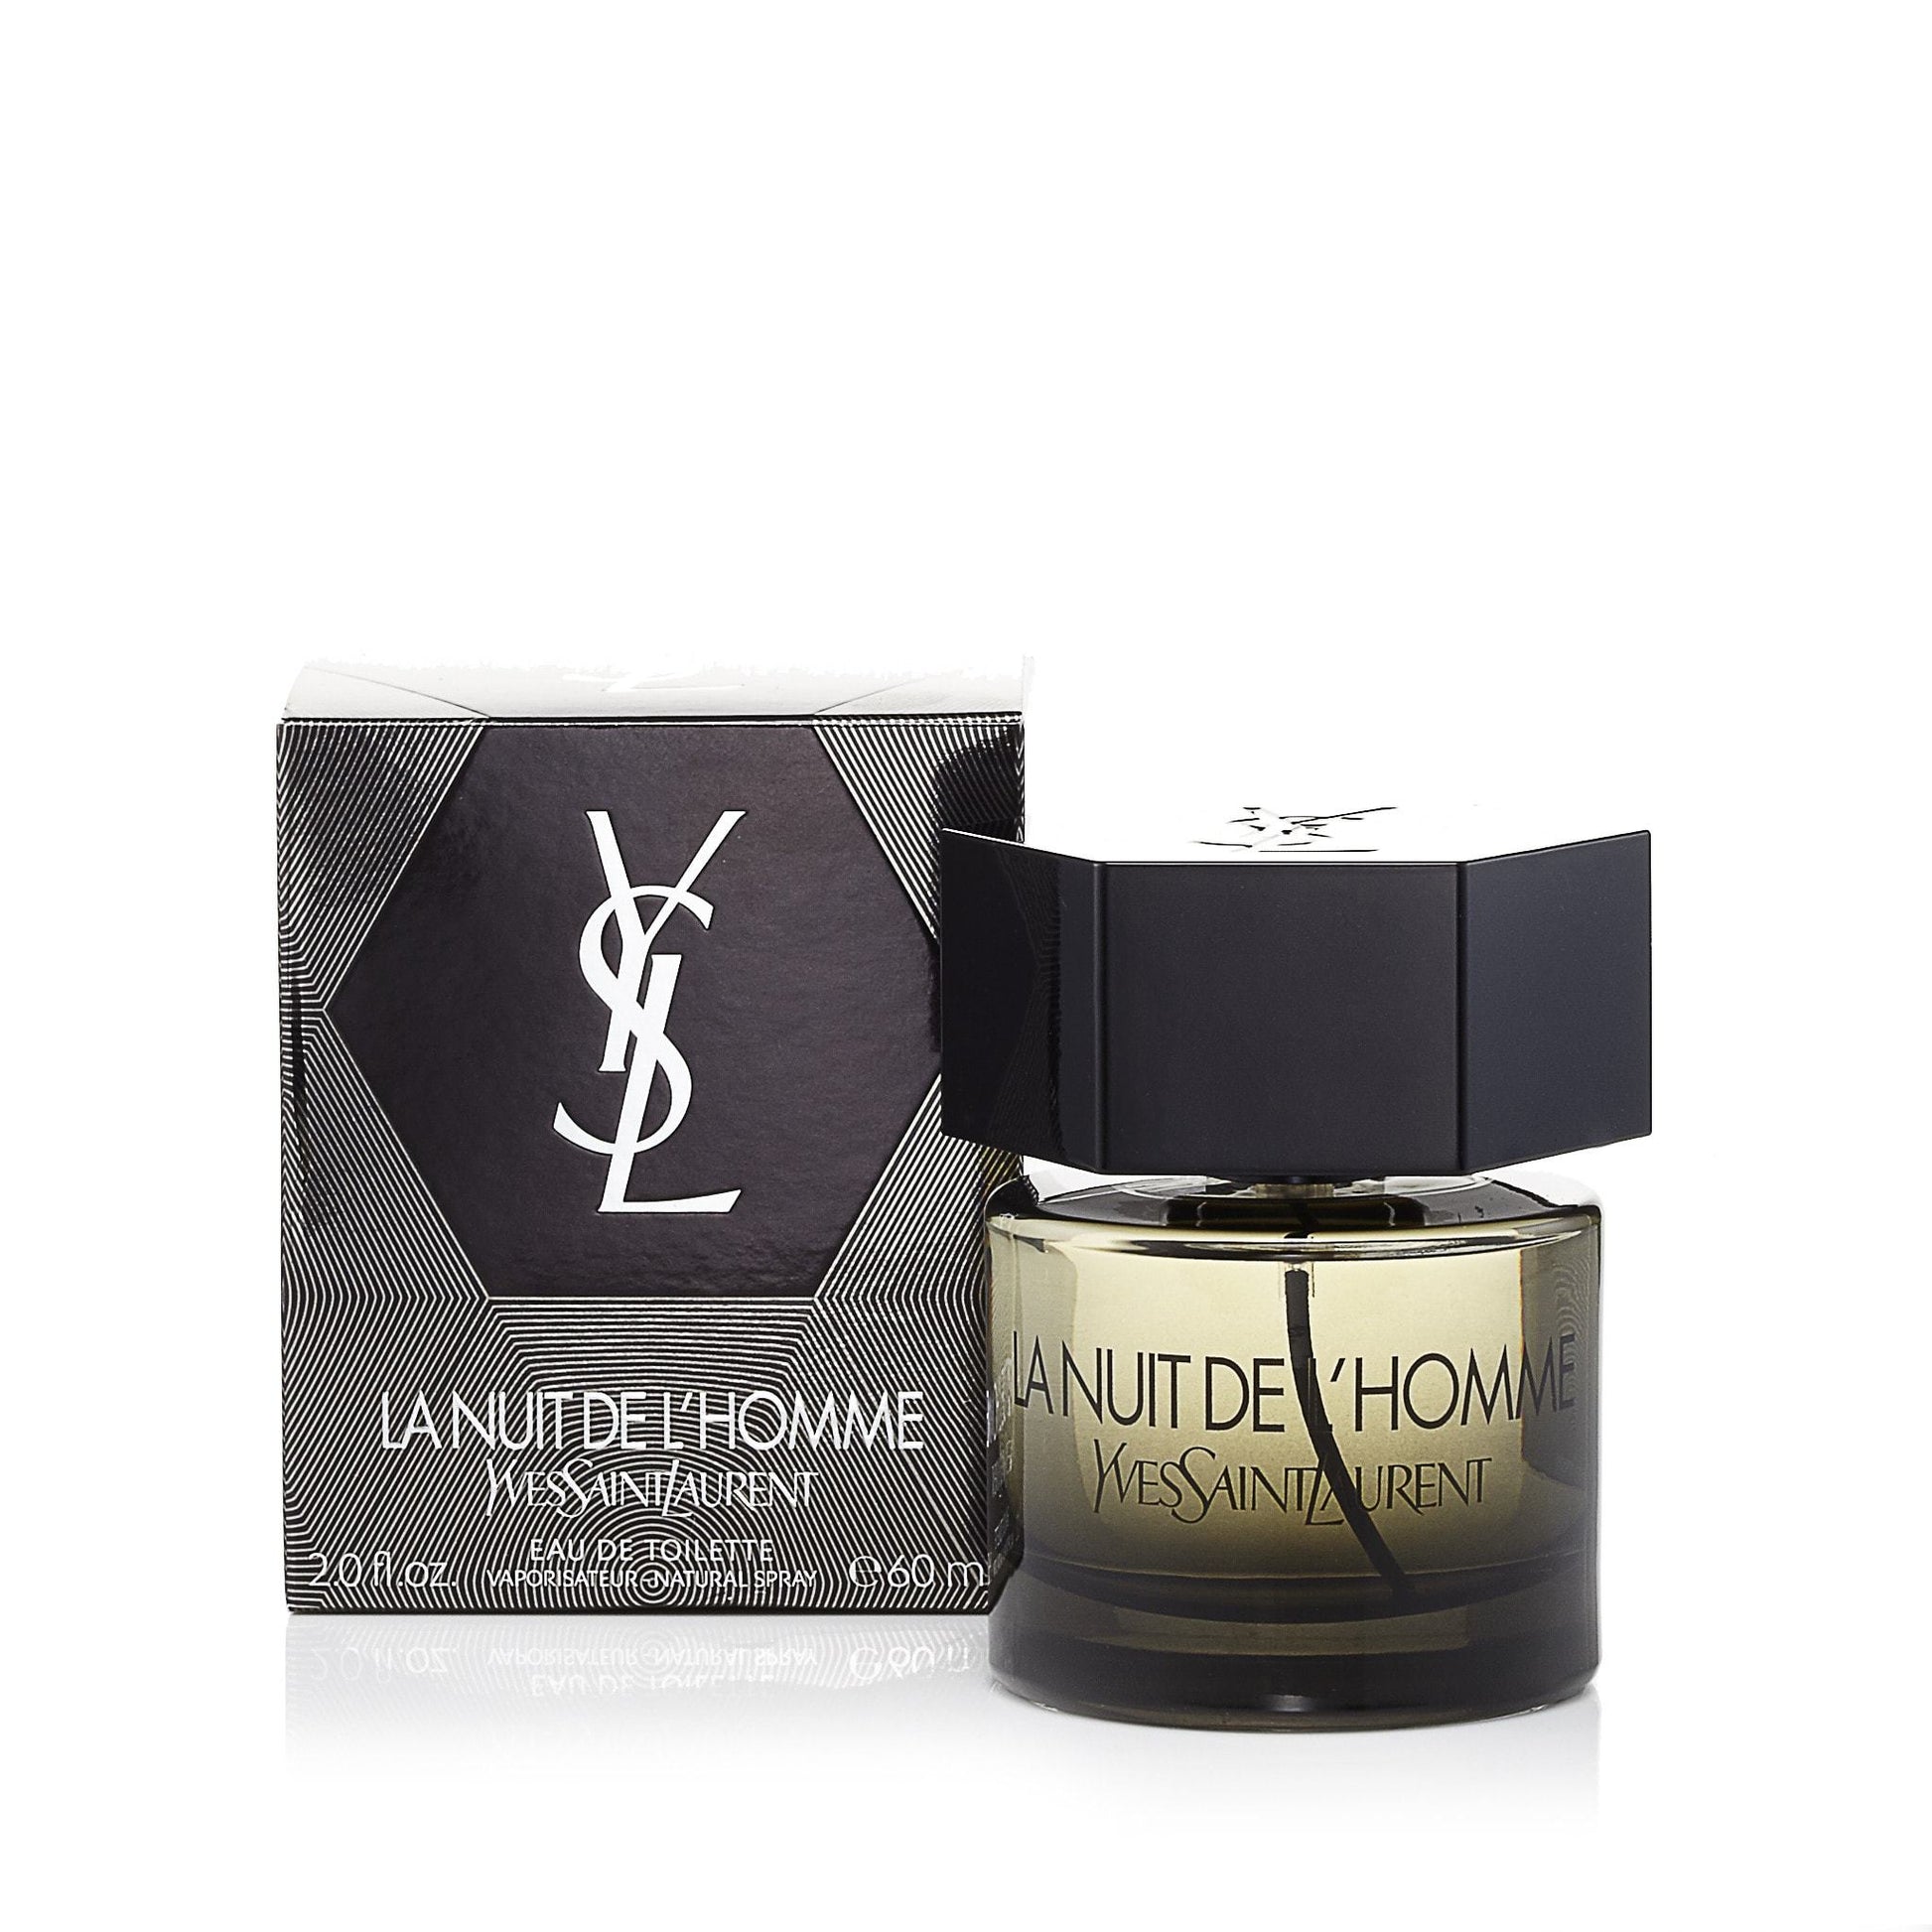 L'Homme La Nuit Eau de Toilette Spray for Men by Yves Saint Laurent, Product image 4